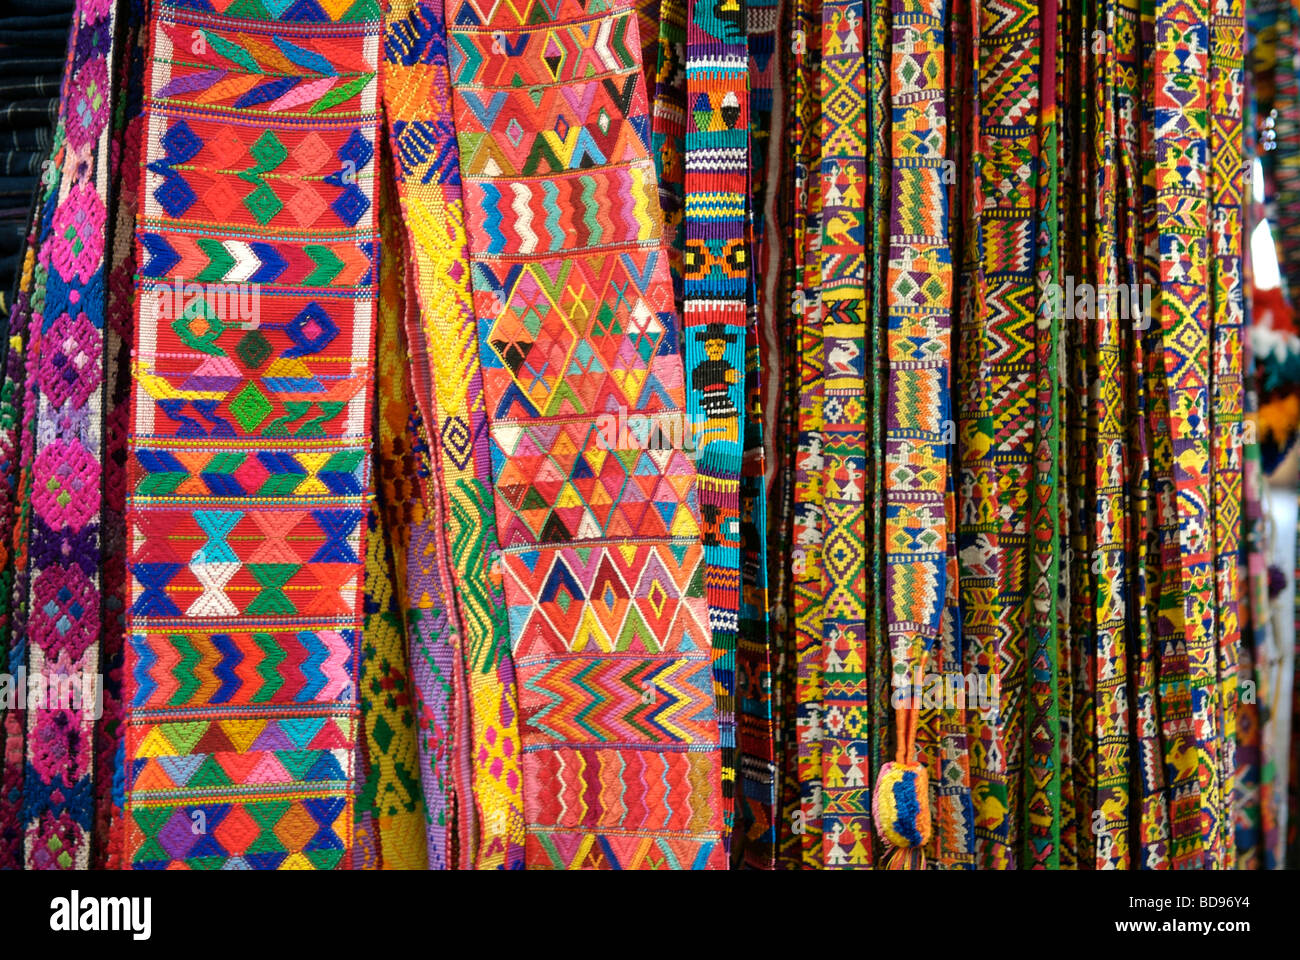 Prodotti tessili guatemalteche sul display in Antigua, Guatemala. Foto Stock